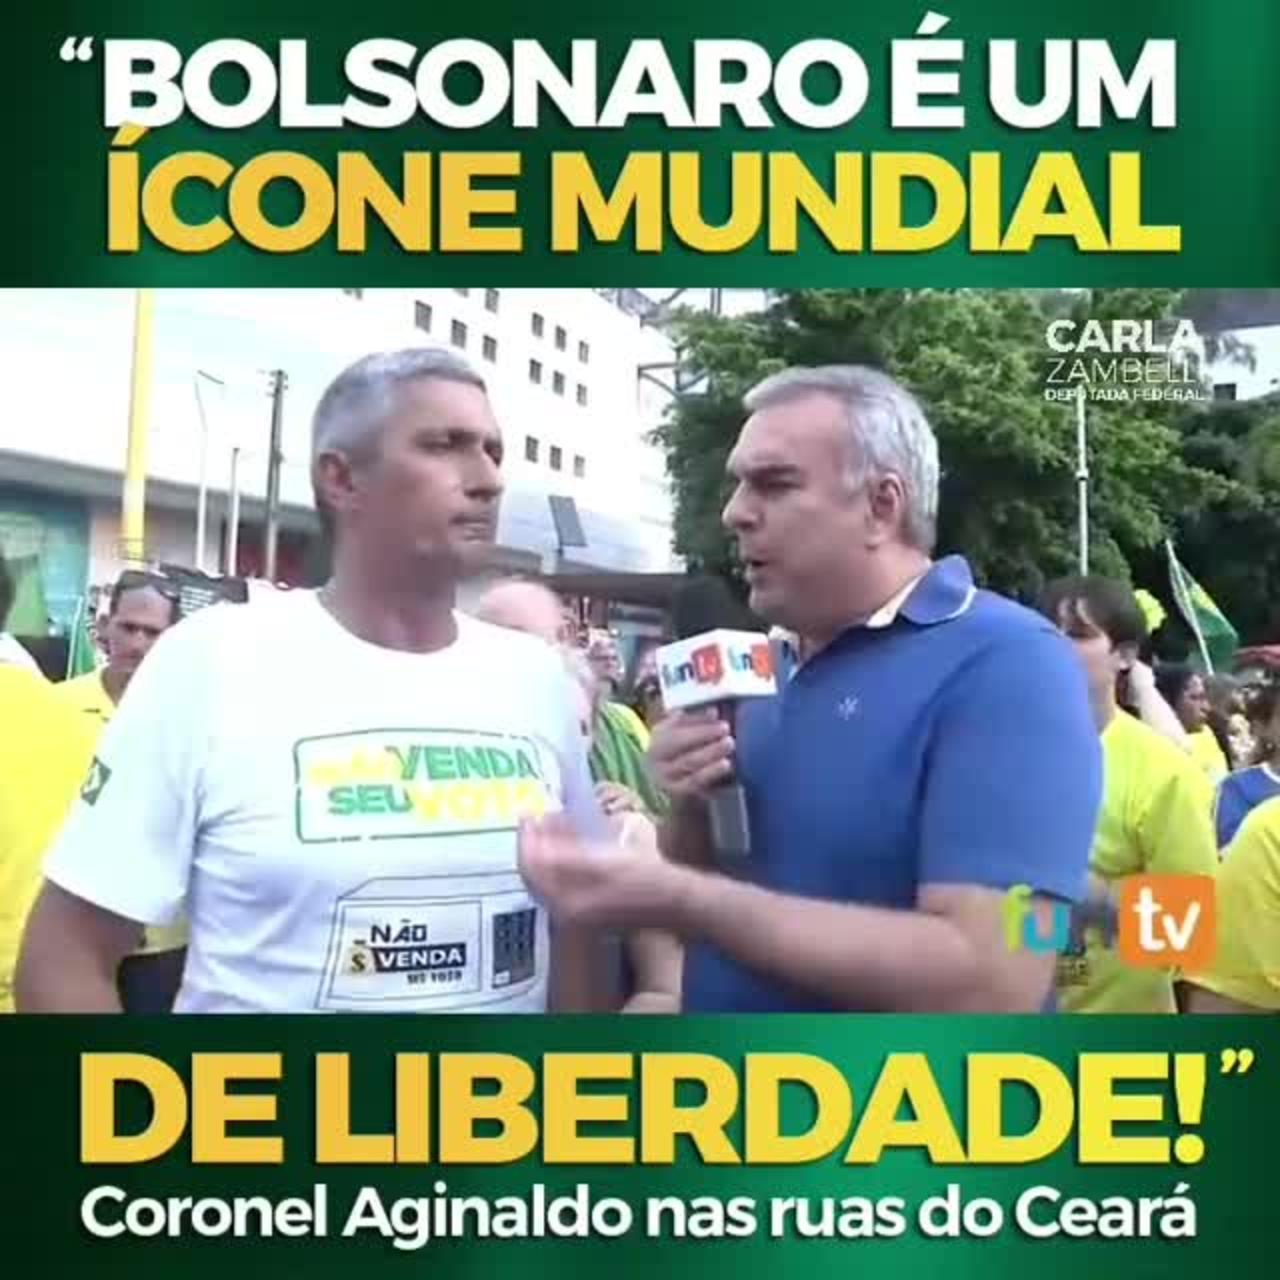 Jair Bolsonaro: ícone mundial #viral #brazil #eleicoes2022 #conservadores